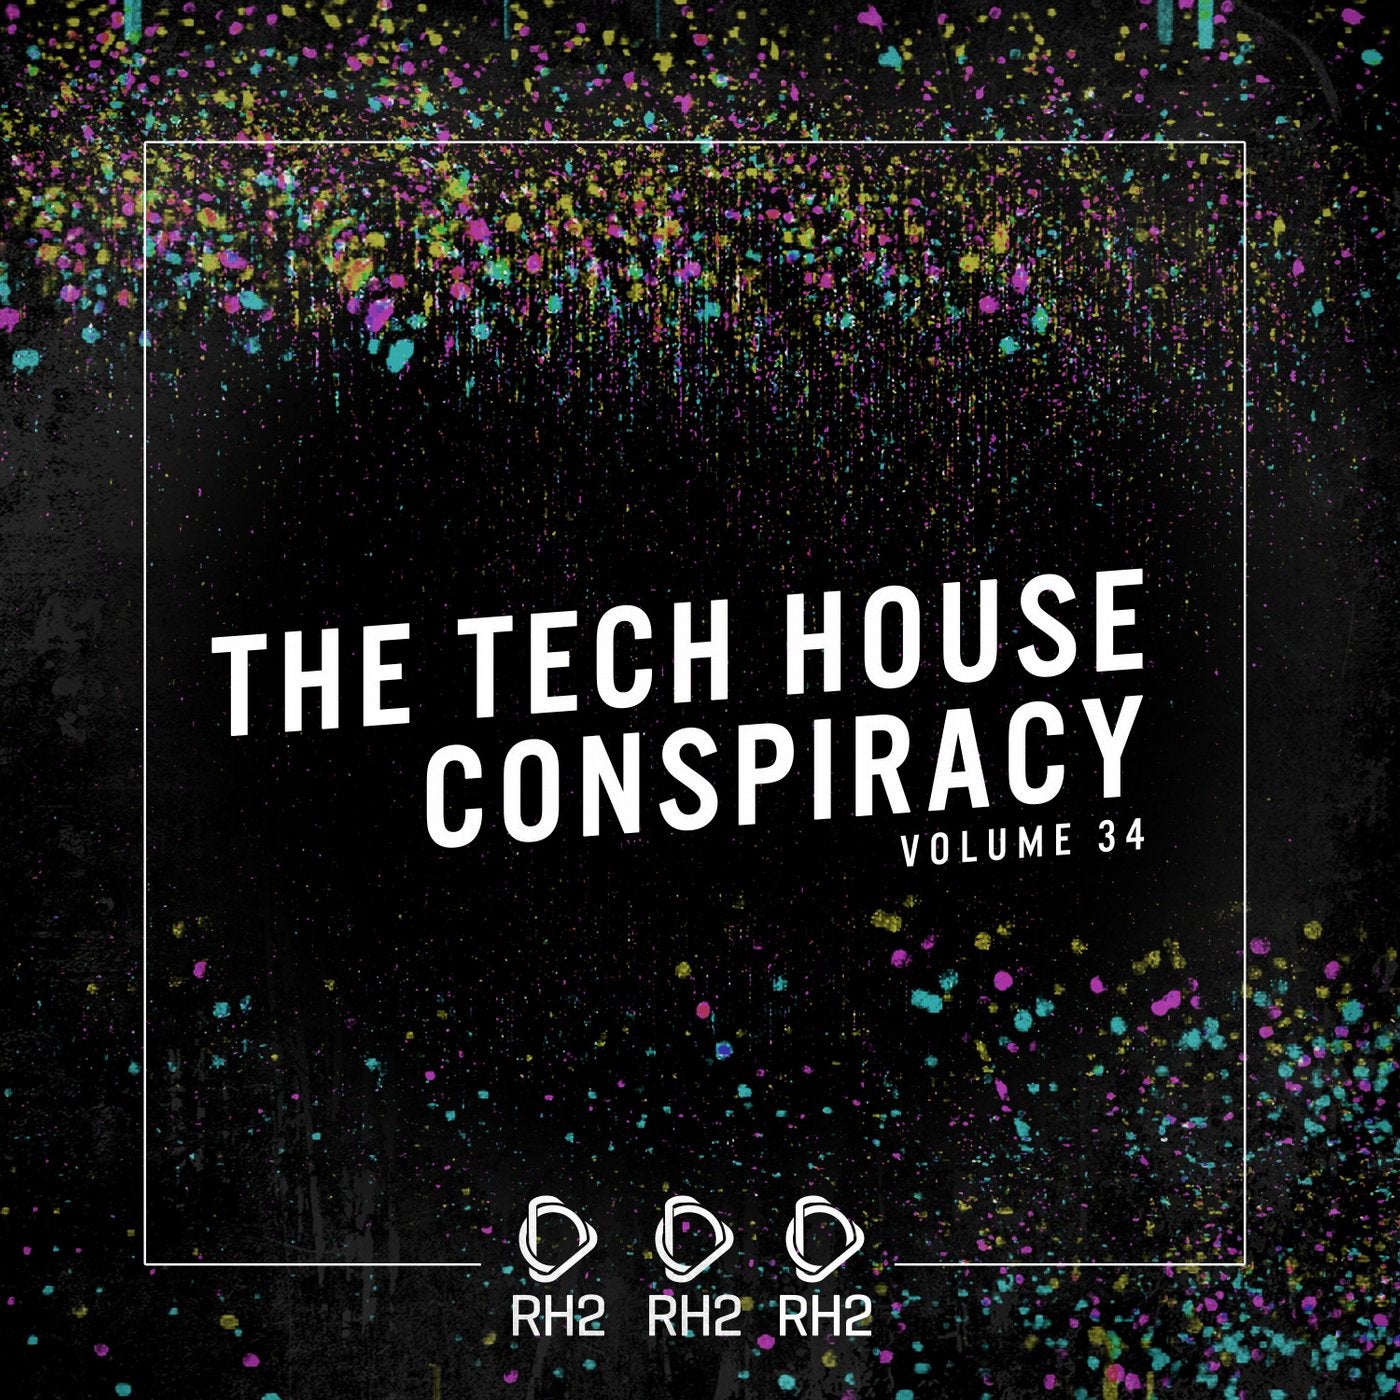 The Tech House Conspiracy Vol. 34